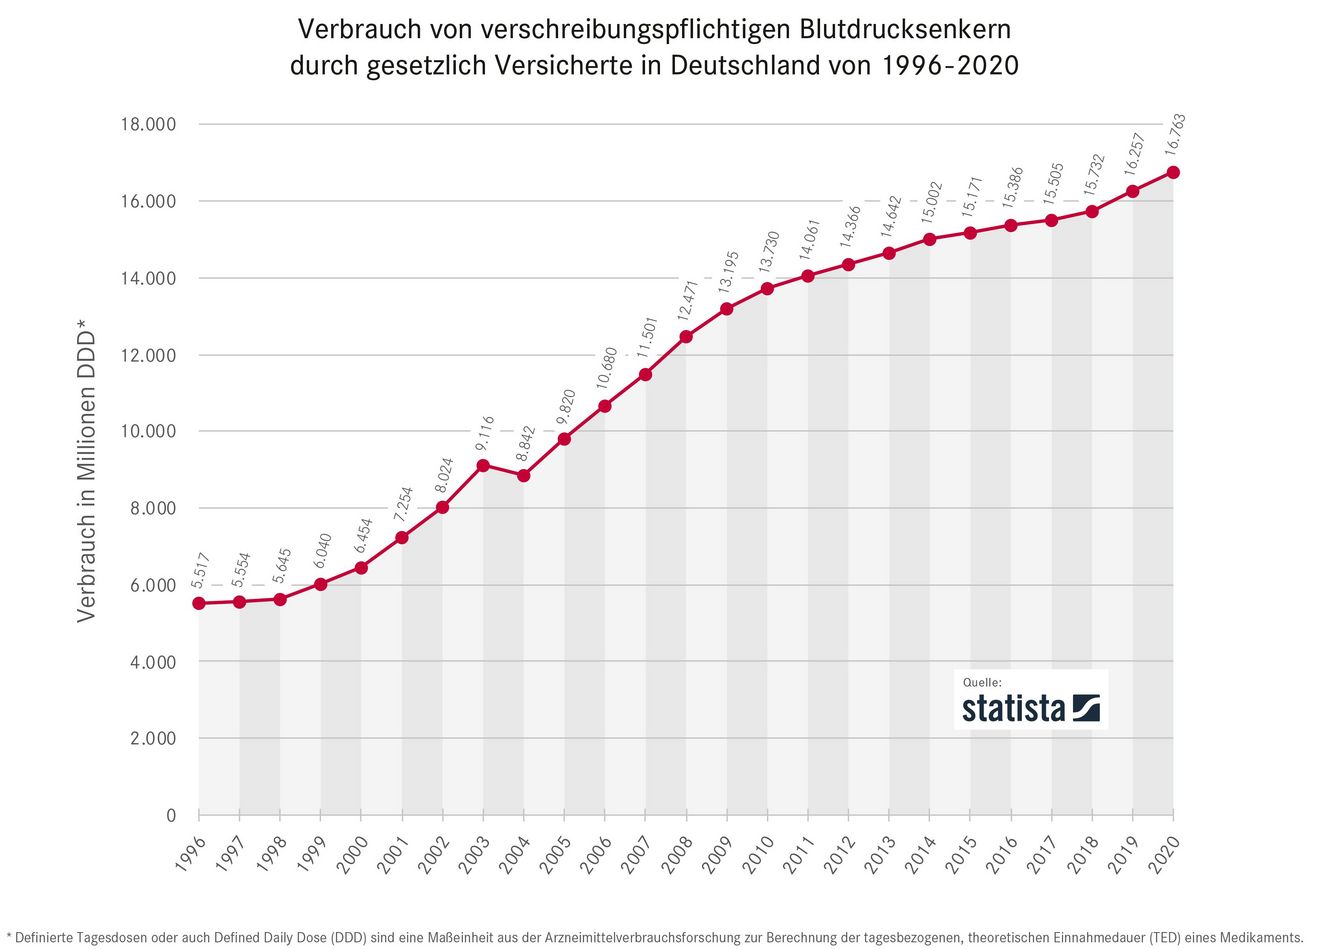 Bluthochdruck - Arzneimittelverbrauch in Deutschland 1996 bis 2020